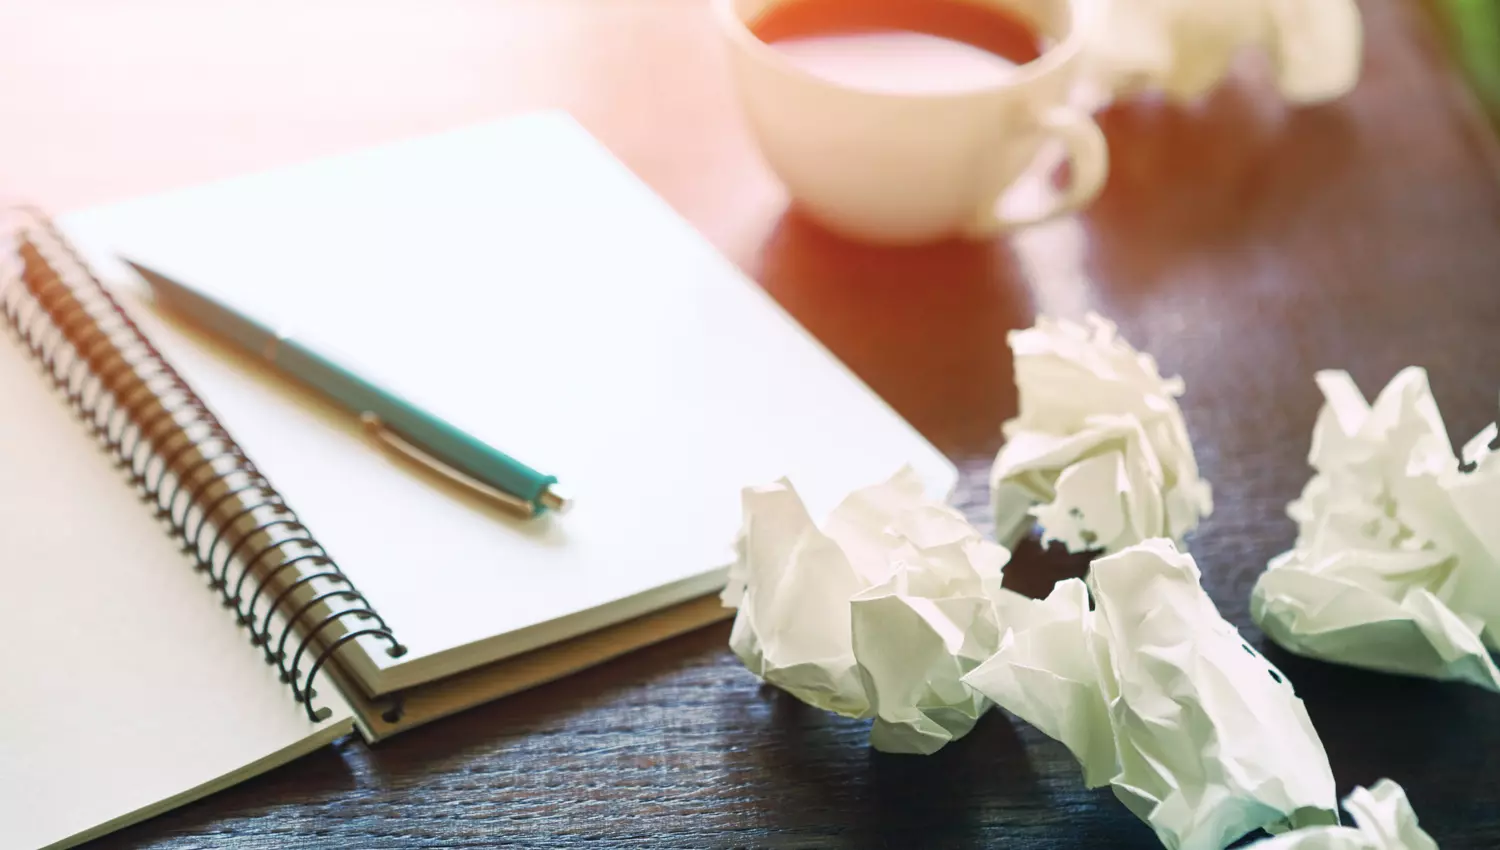 Ein aufgeschlagenes Notizbuch, zerknüllte Papierballen und eine Tasse Kaffee stehen auf einem Tisch.